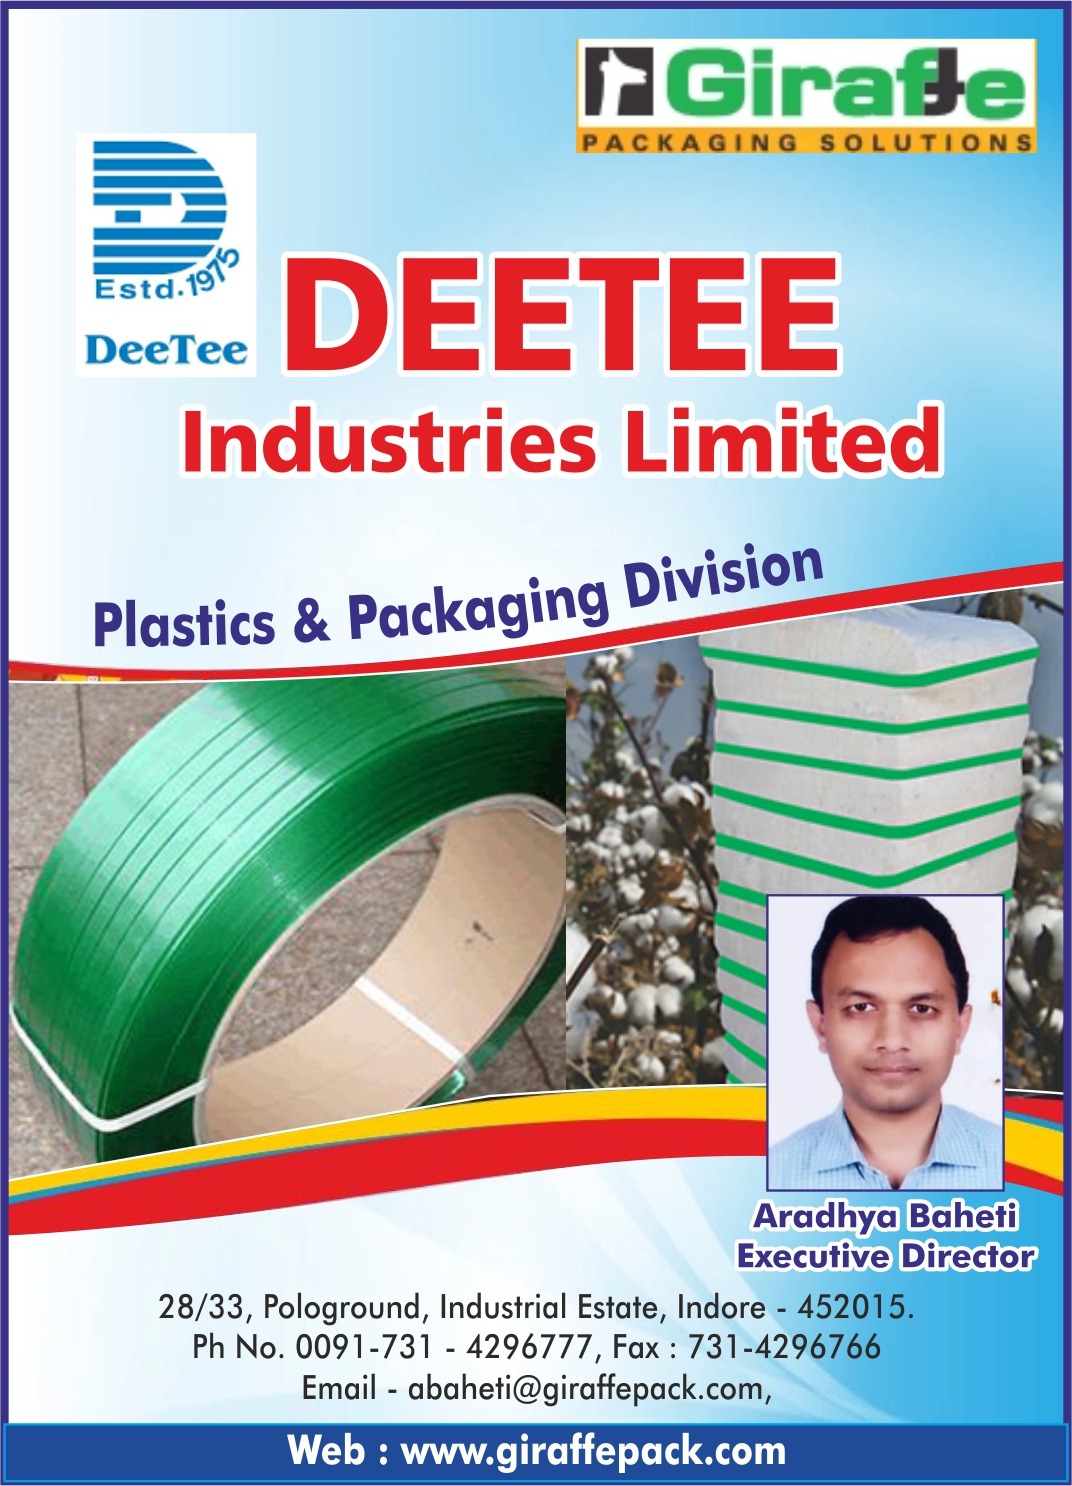 Dee Tee Industries Limited